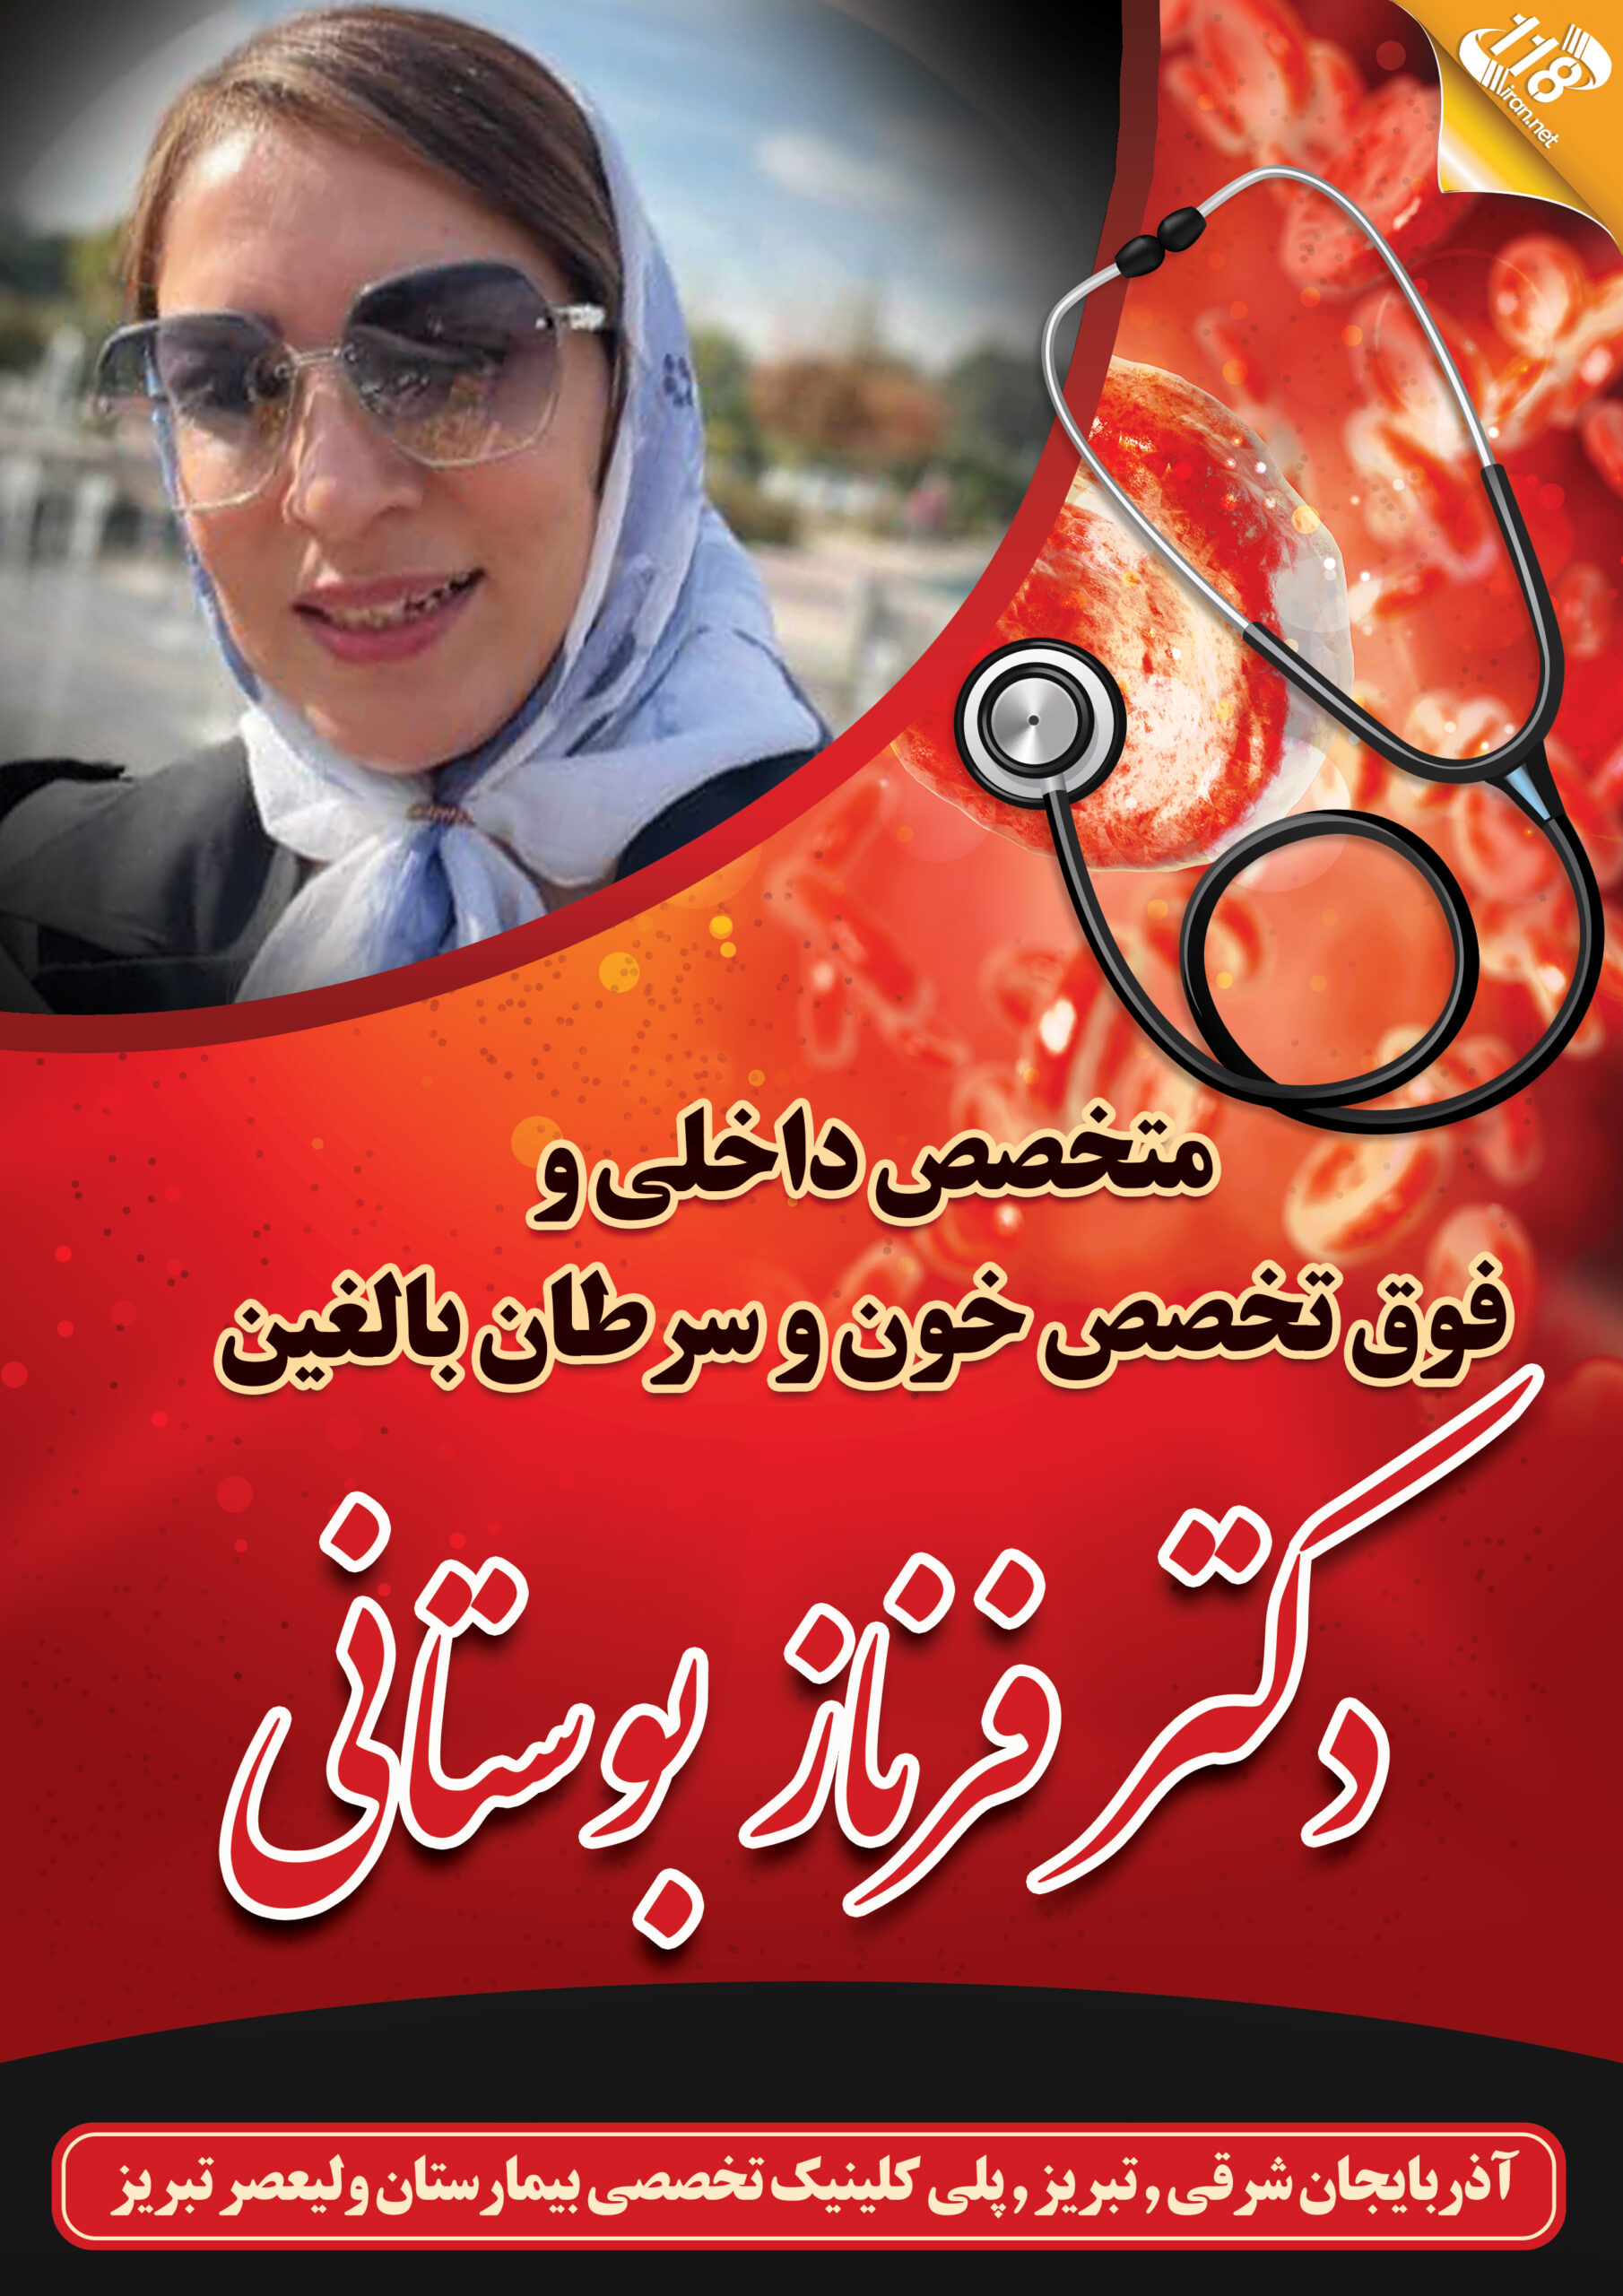  دکتر فرناز بوستانی در تبریز 